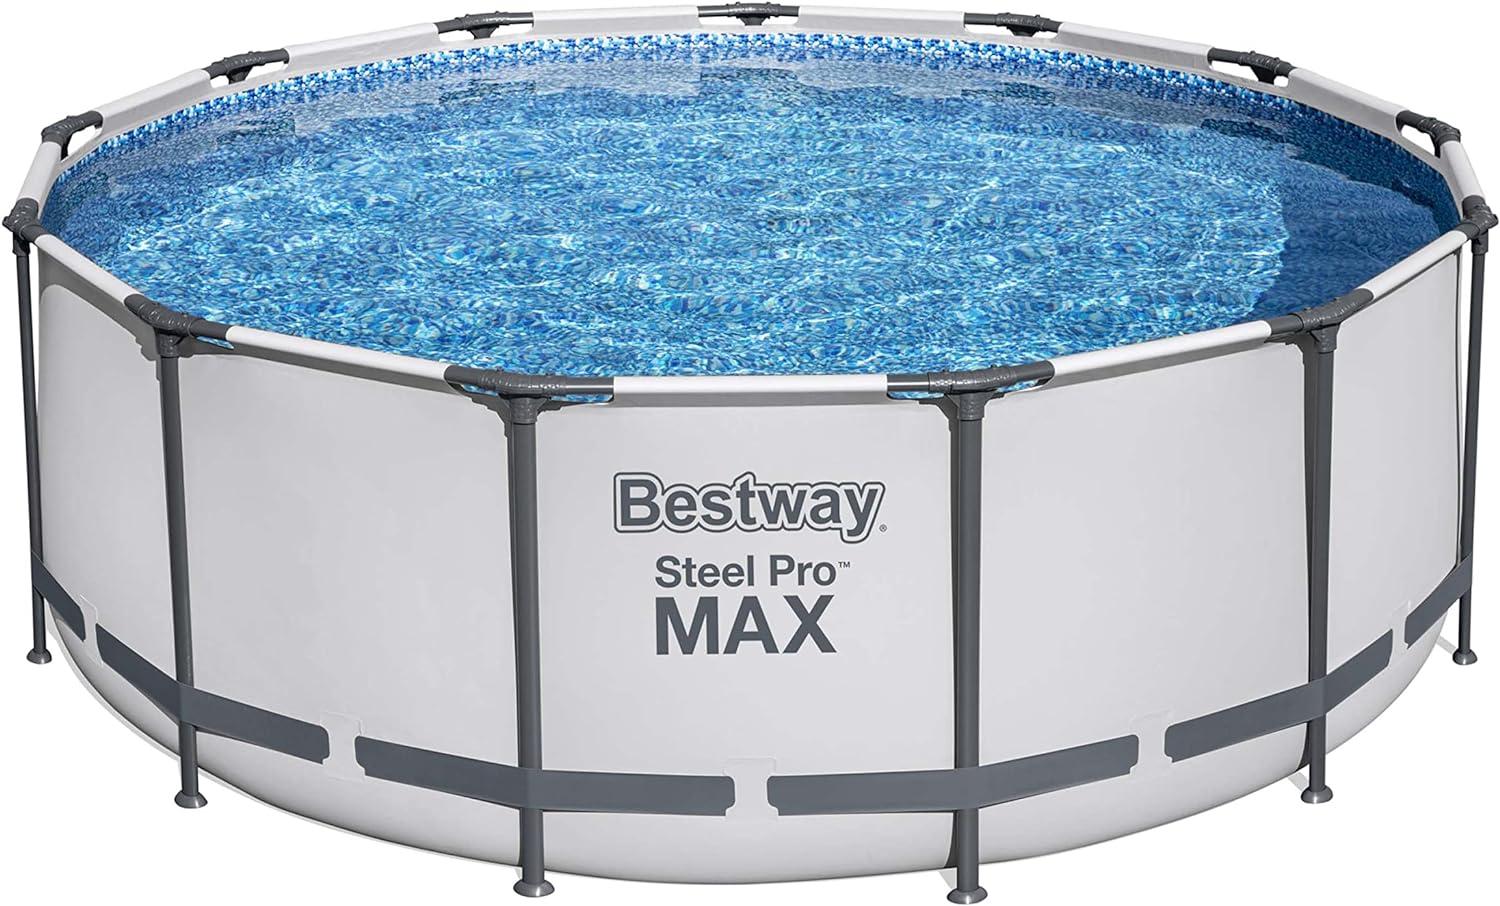 Steel Pro MAX™ Solo Pool ohne Zubehör Ø 396 x 122 cm, lichtgrau, rund Bild 1